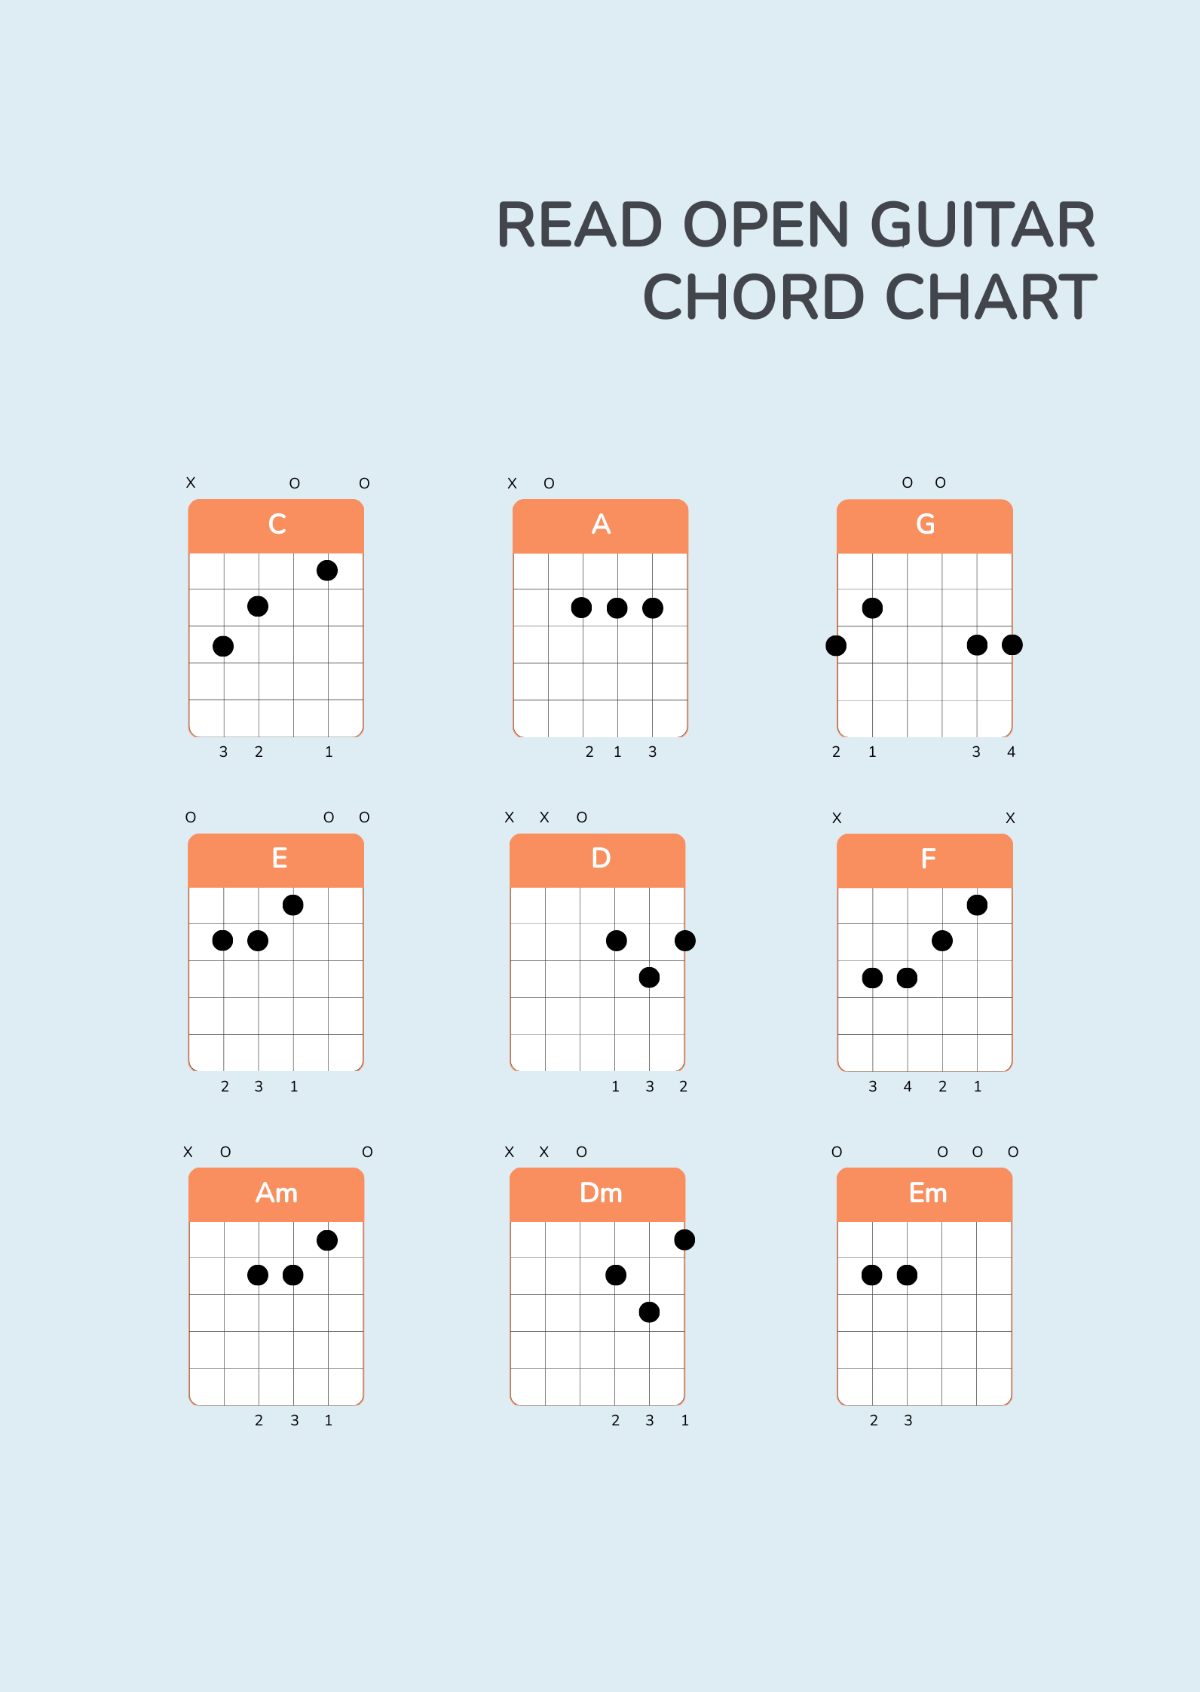 Read Open Guitar Chord Chart Template